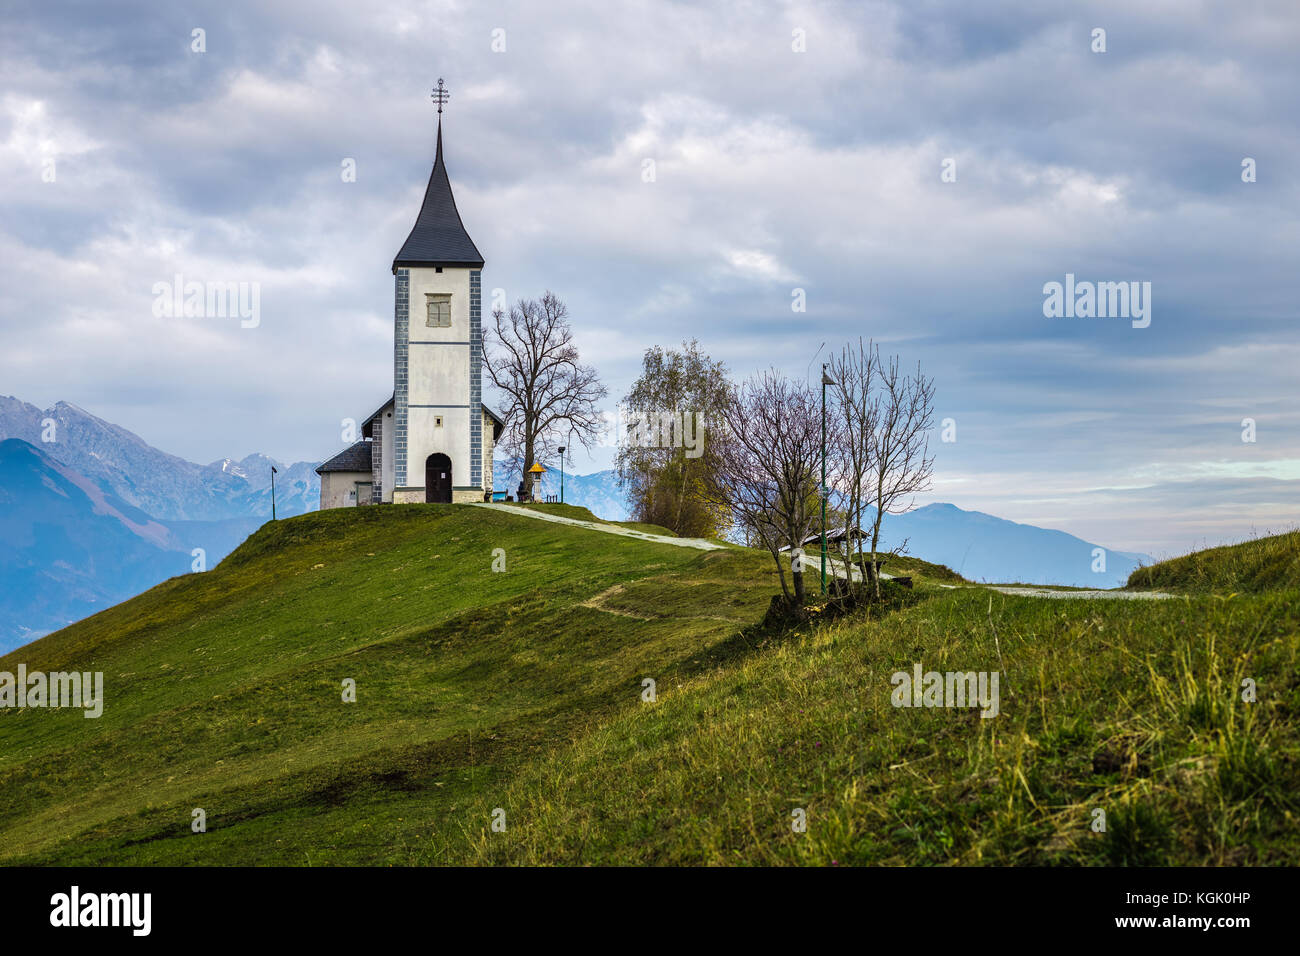 Jamnik, Slowenien - Die schöne Kirche St. Primoz in Slowenien bei Jamnik mit Julischen Alpen im Hintergrund Stockfoto